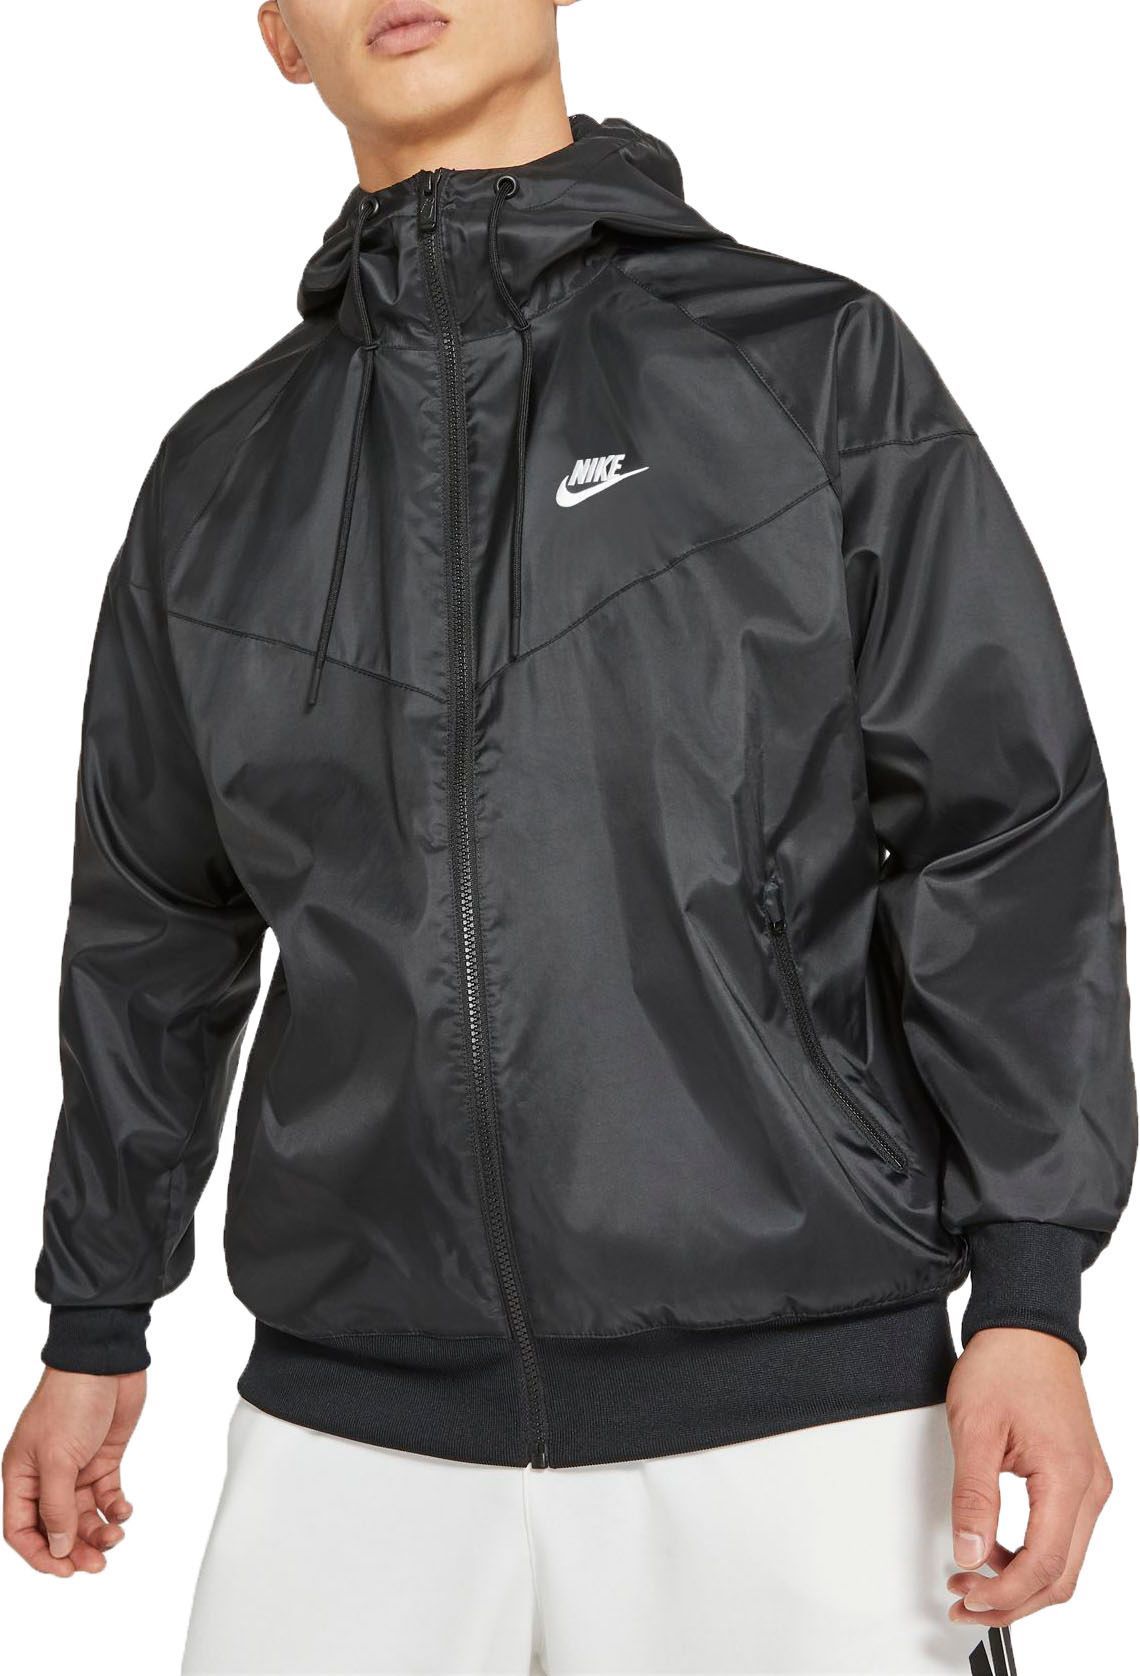 Nike Men's Sportswear Windrunner Hooded Jacket, Small, Black | Dick's Sporting Goods